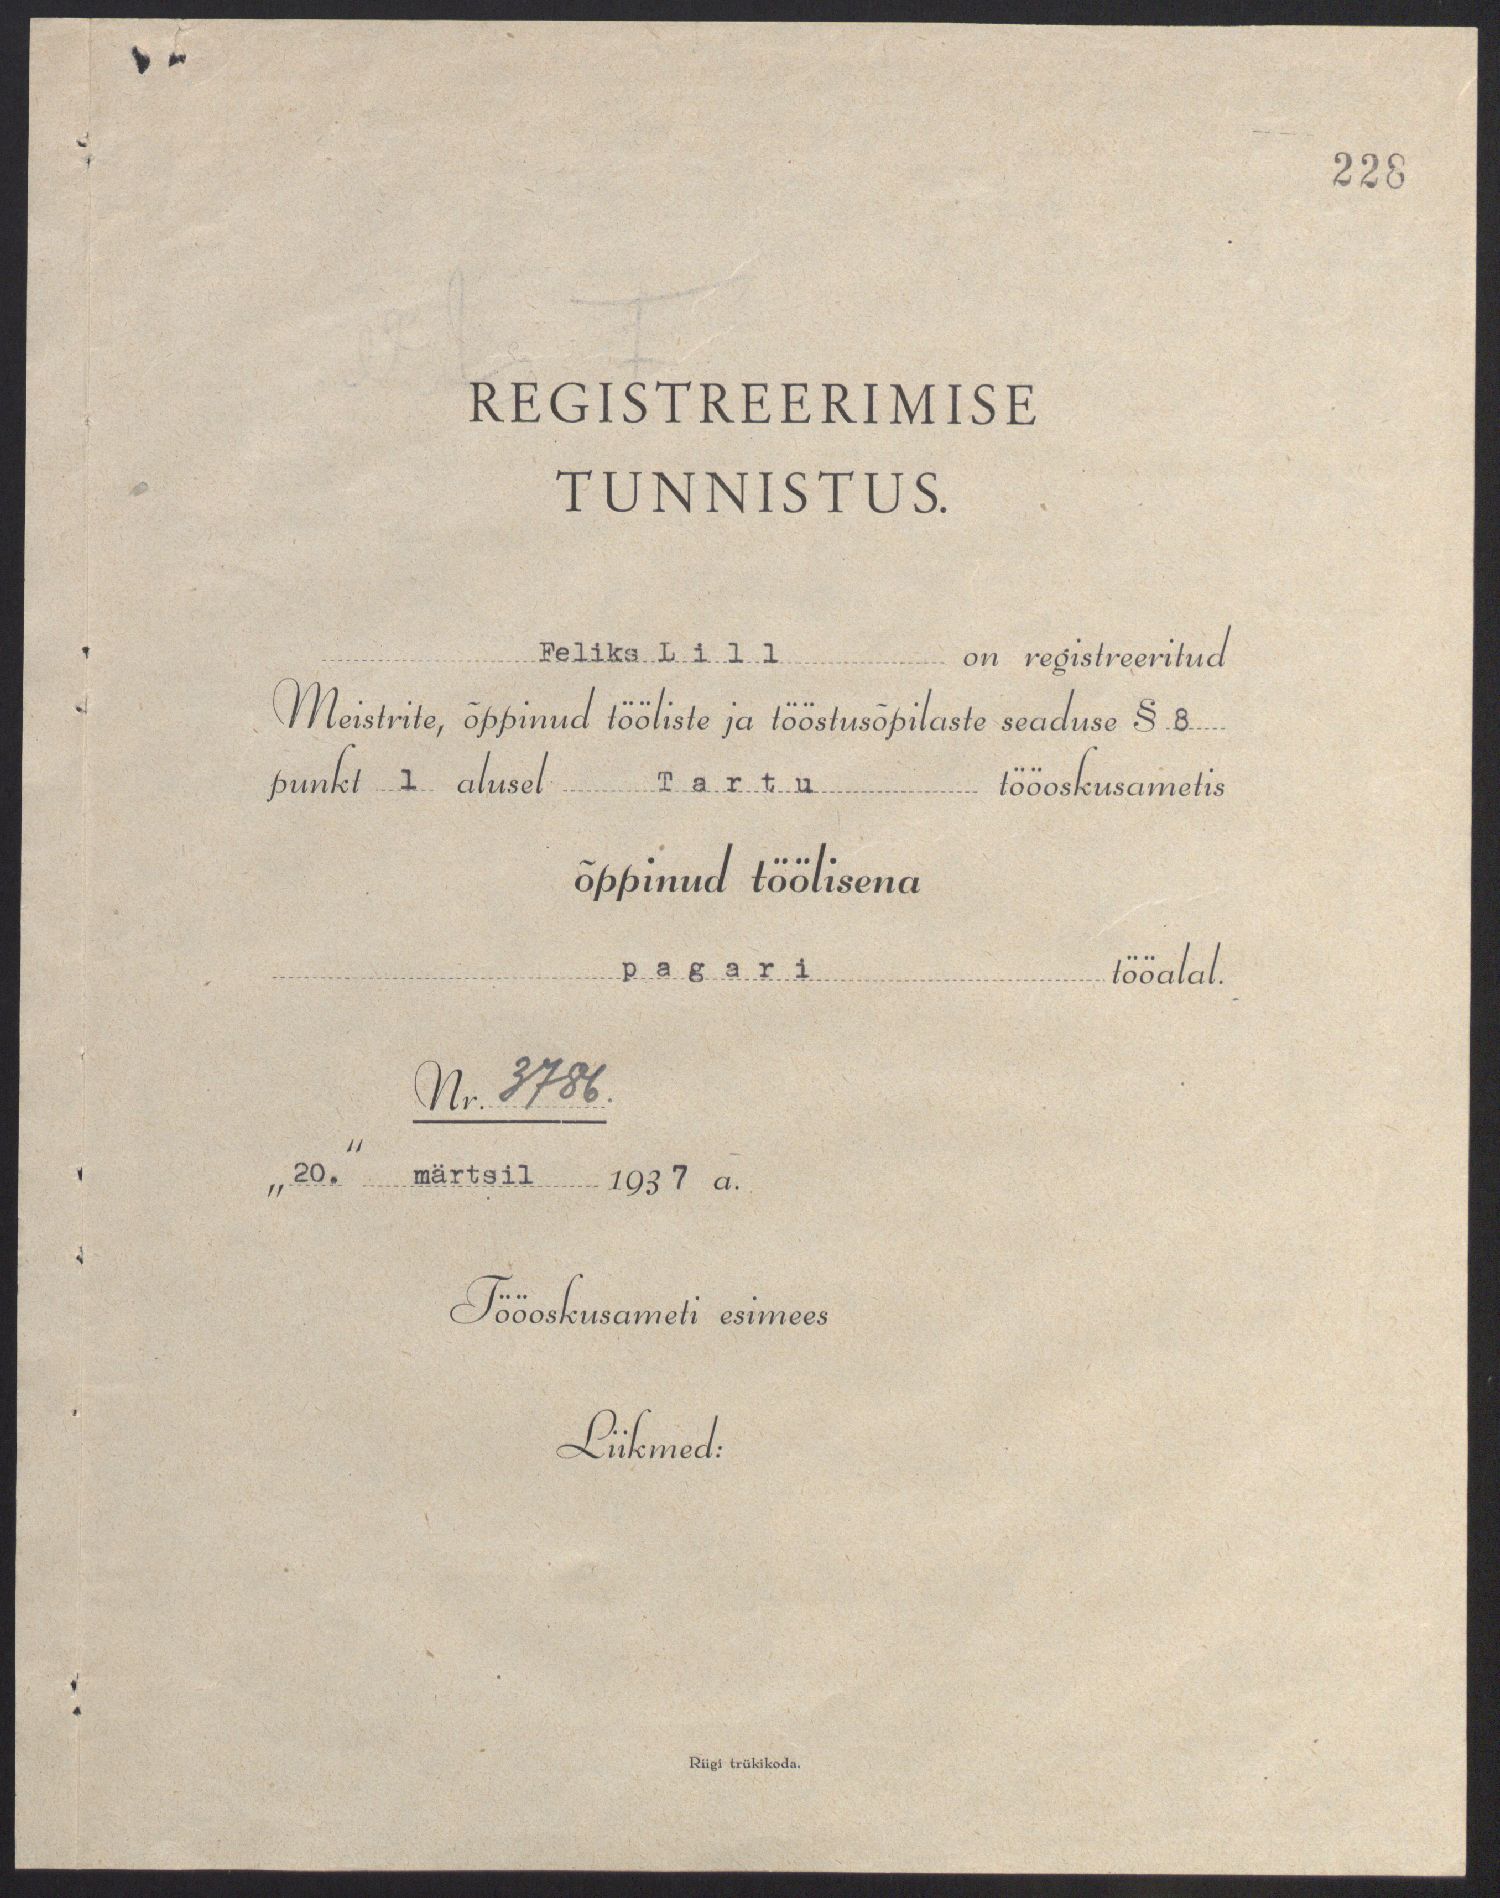 Tartu tööoskusameti pagarimeistri registreerimistunnistus Feliks Lillele, 1937. ERA.3167.1.3981